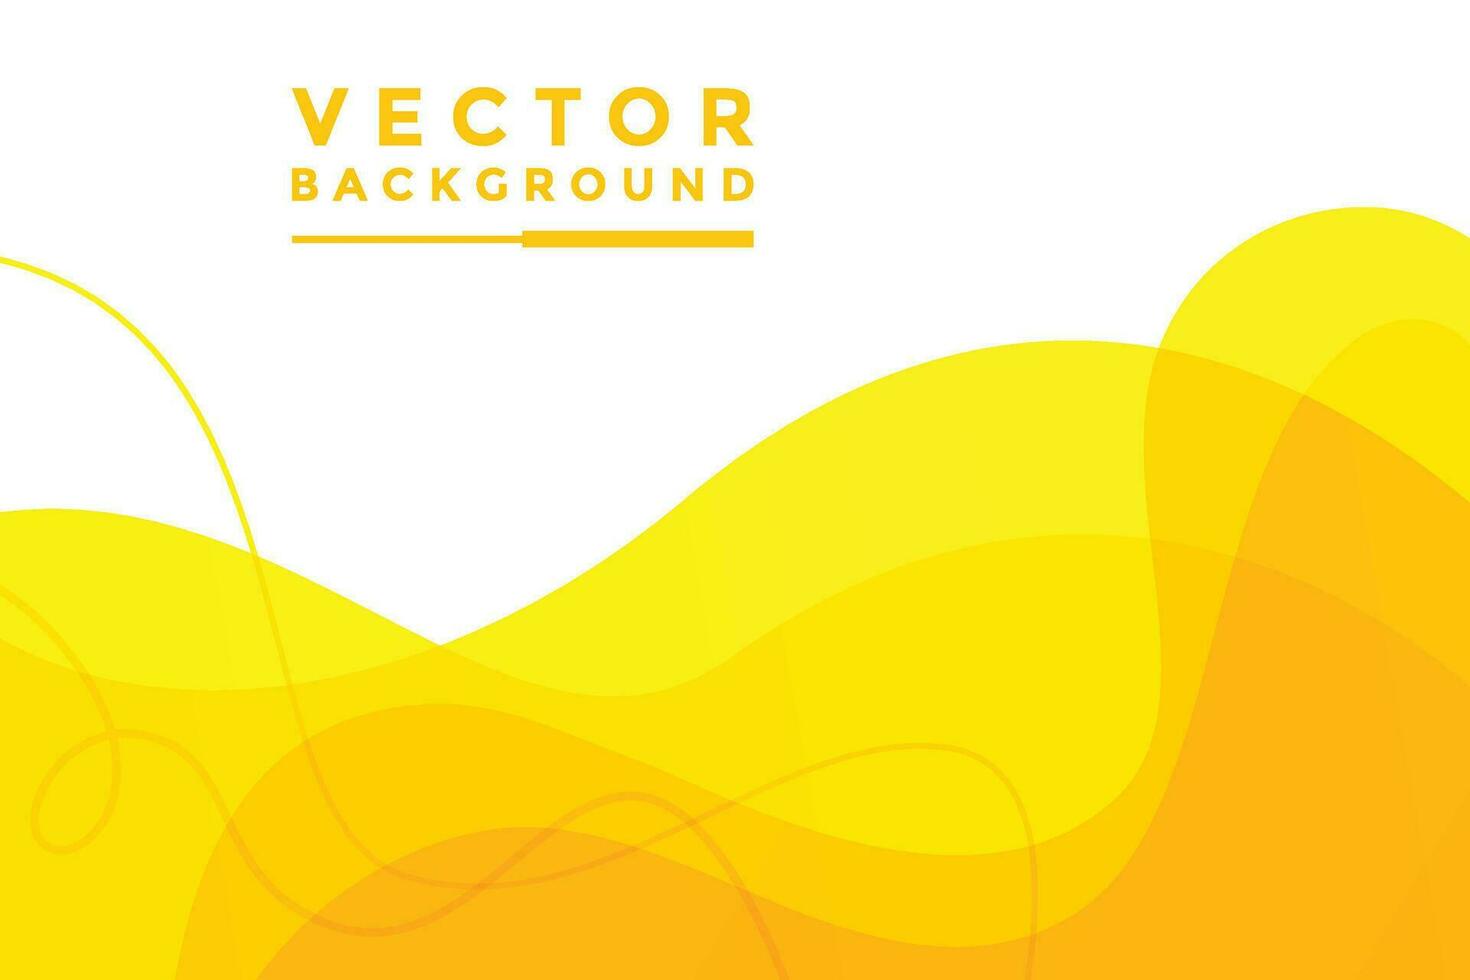 gul bakgrund vektor illustration ljuseffekt grafik för text och anslagstavla design infographic.